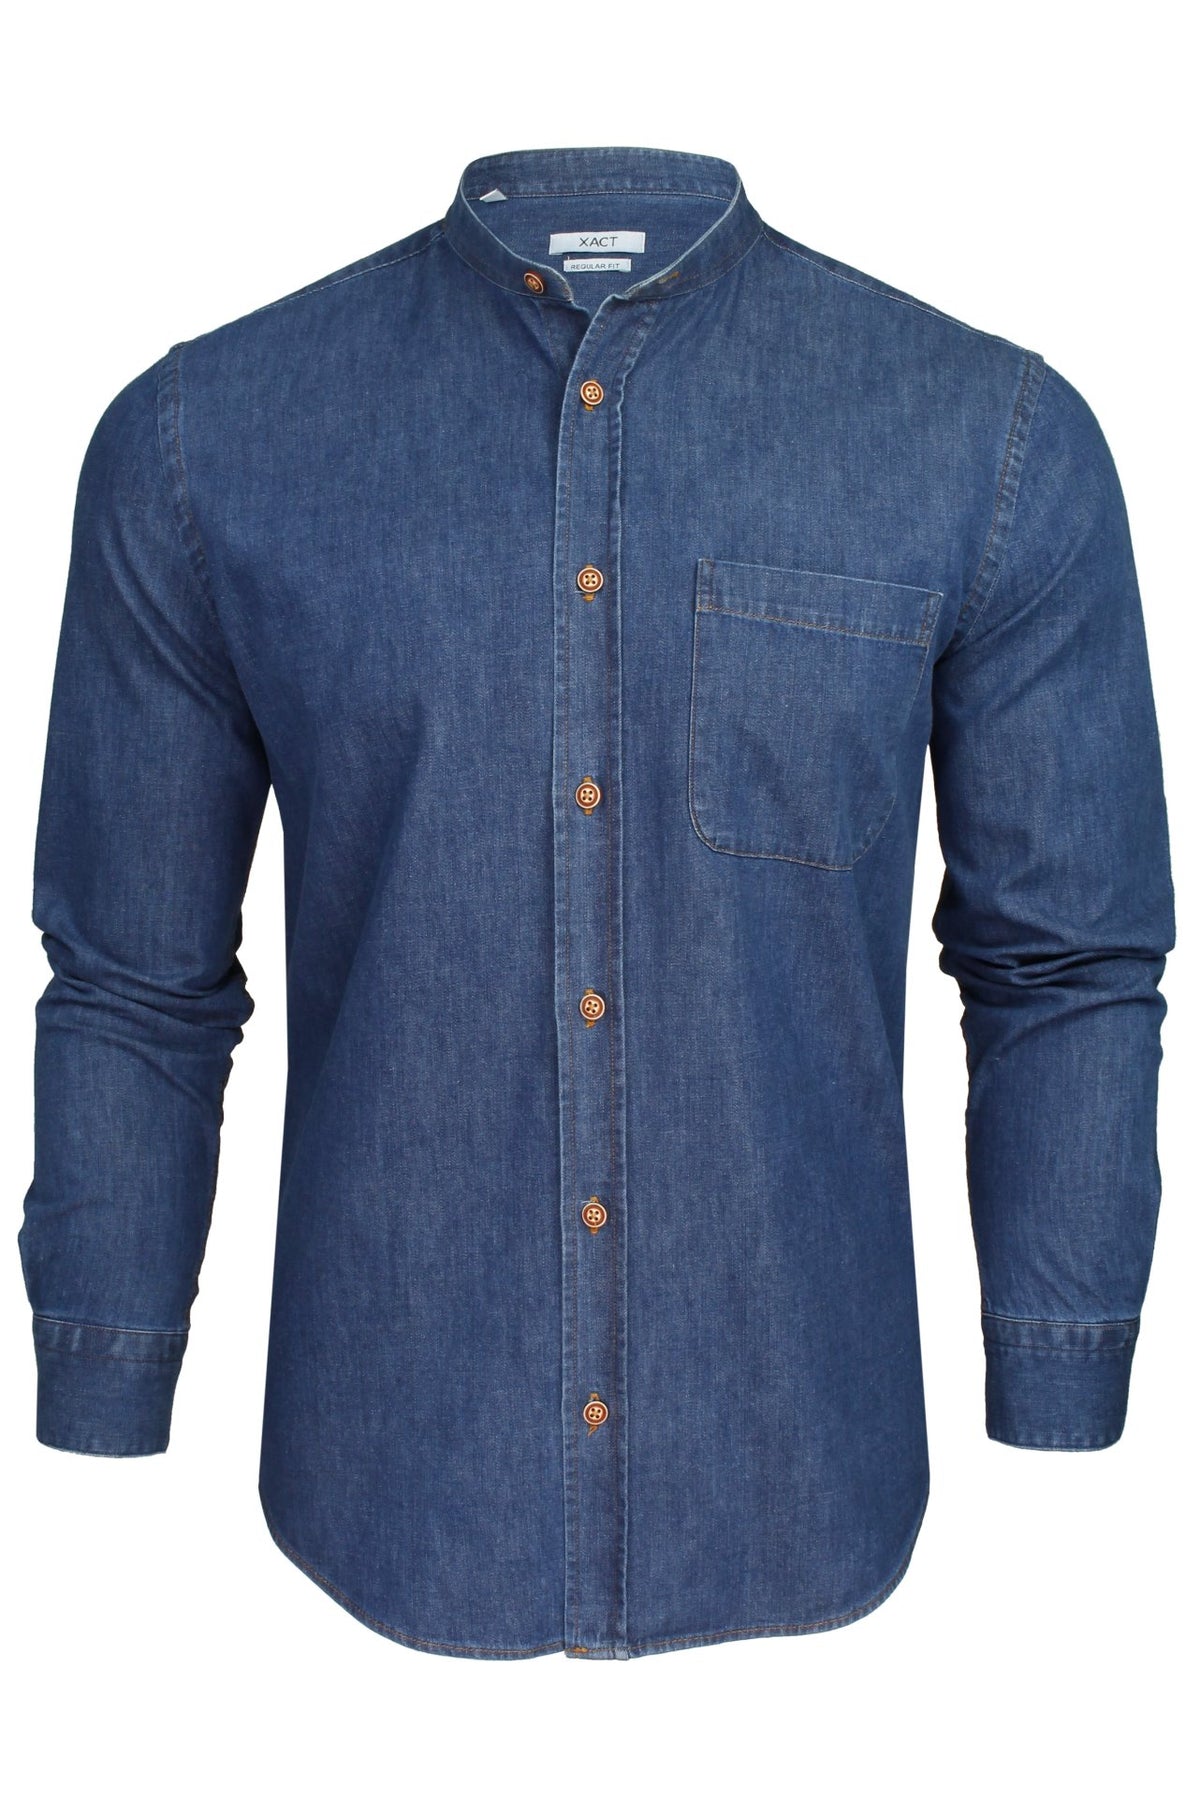 Xact Mens 6.6 oz Denim Band / Grandad Collar Shirt - Long Sleeved, 01, Xsh1173, Medium Blue Denim